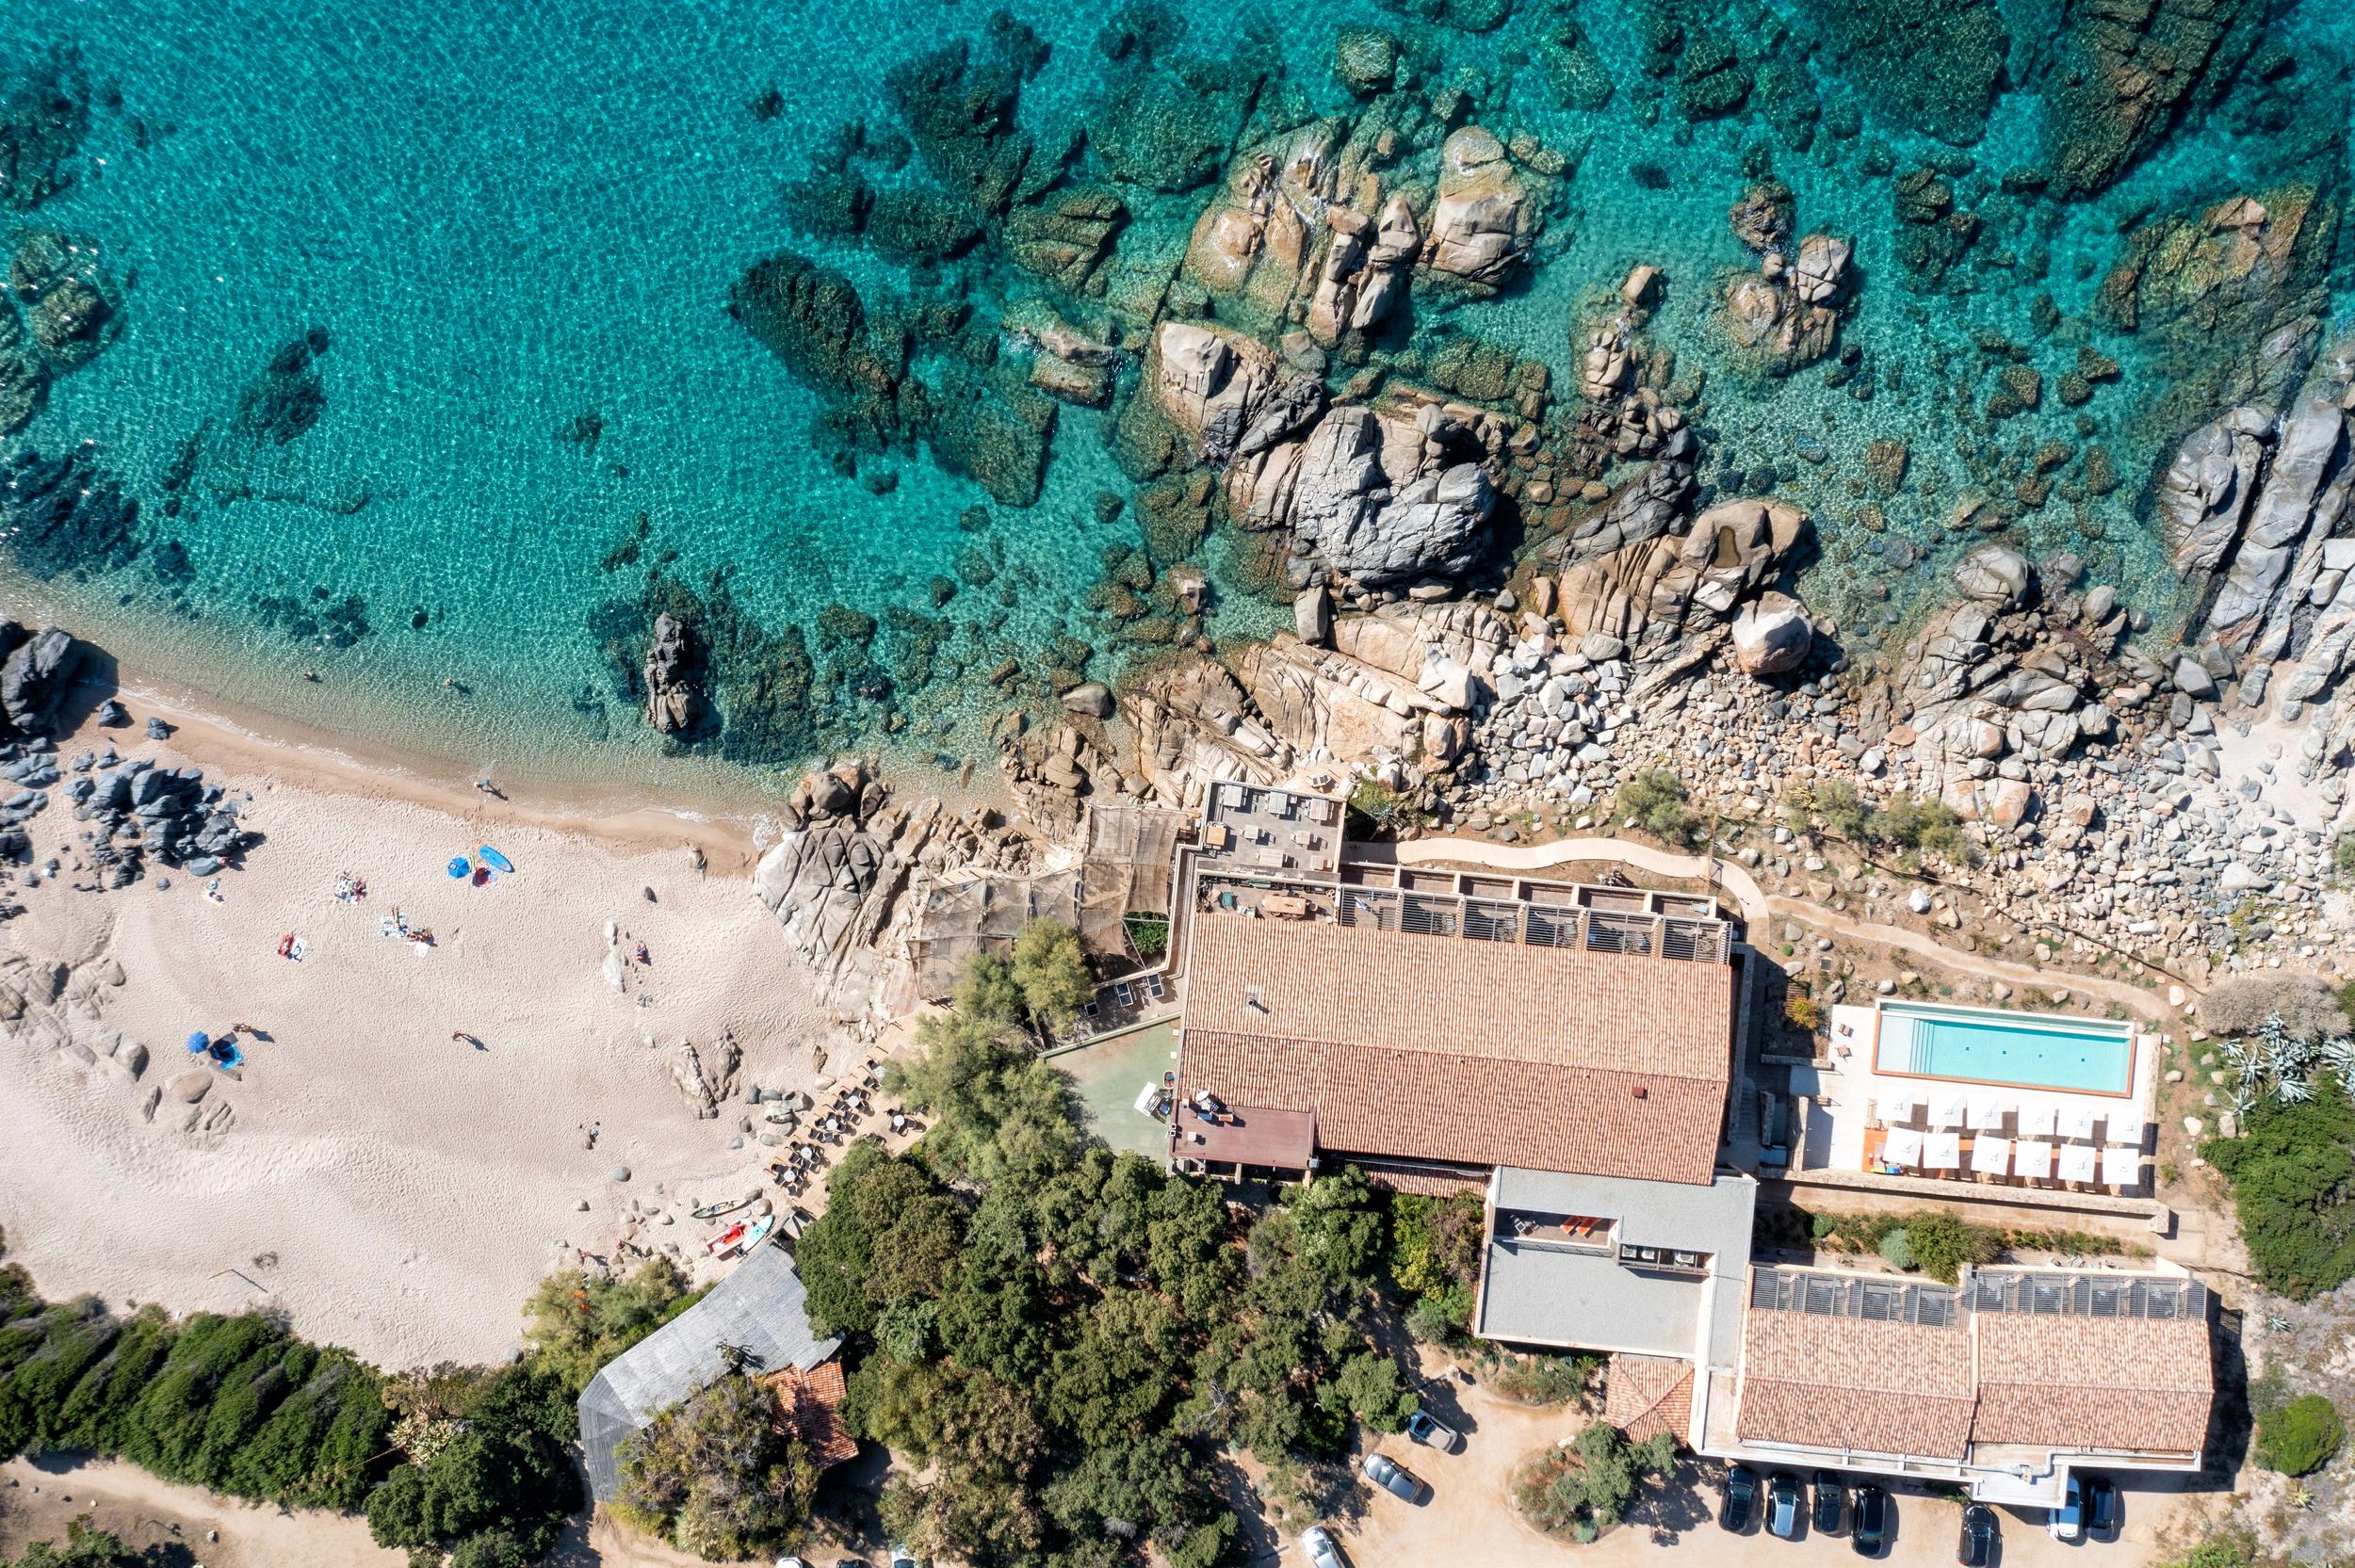 Réduction sur location de vacances en Corse